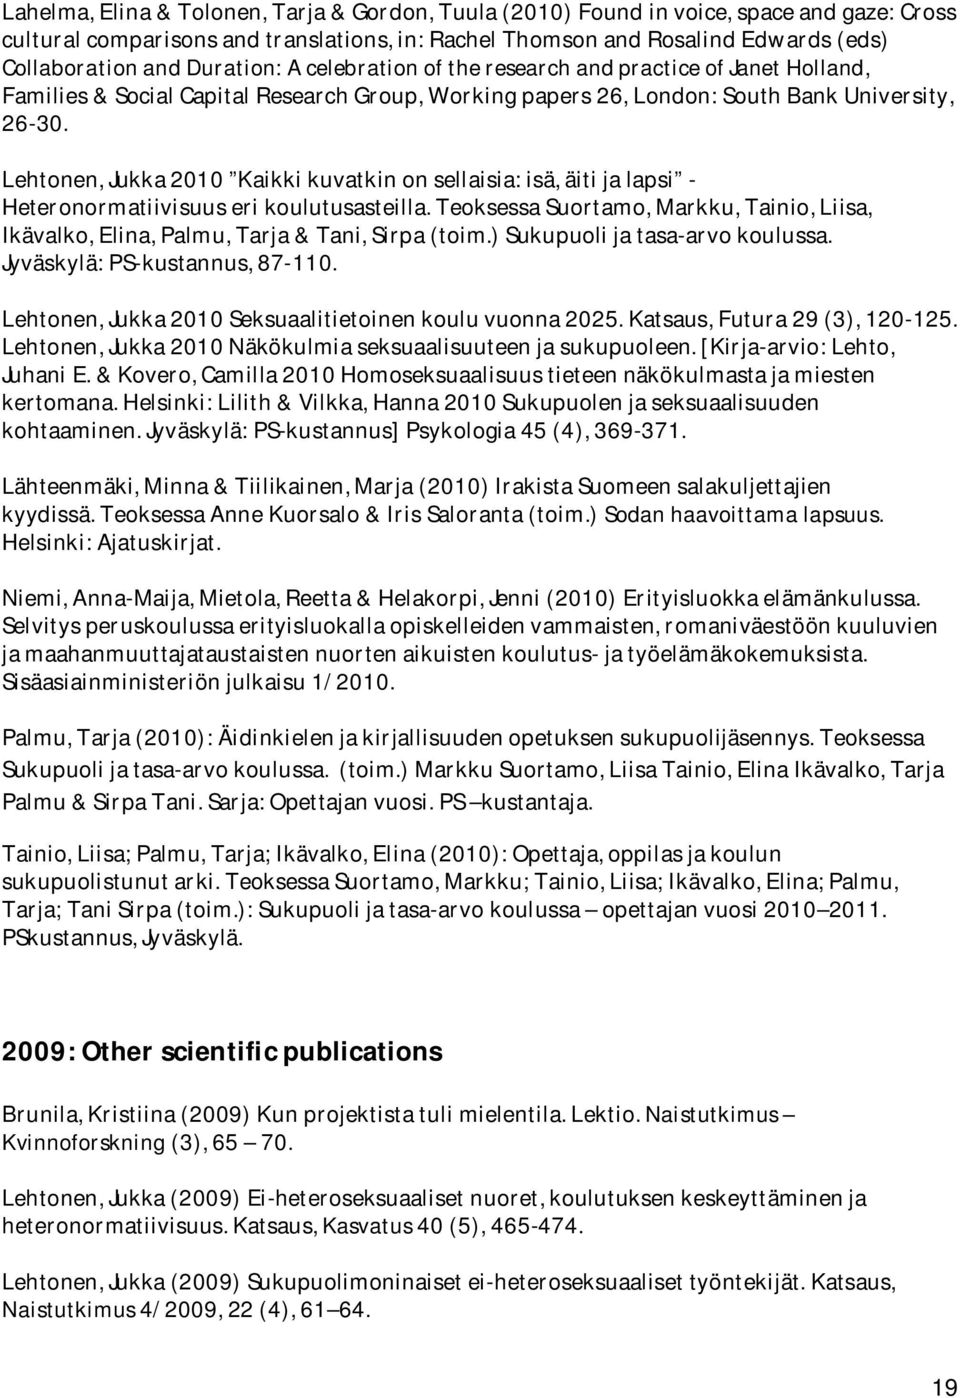 Lehtonen, Jukka 2010 Kaikki kuvatkin on sellaisia: isä, äiti ja lapsi - Heteronormatiivisuus eri koulutusasteilla.